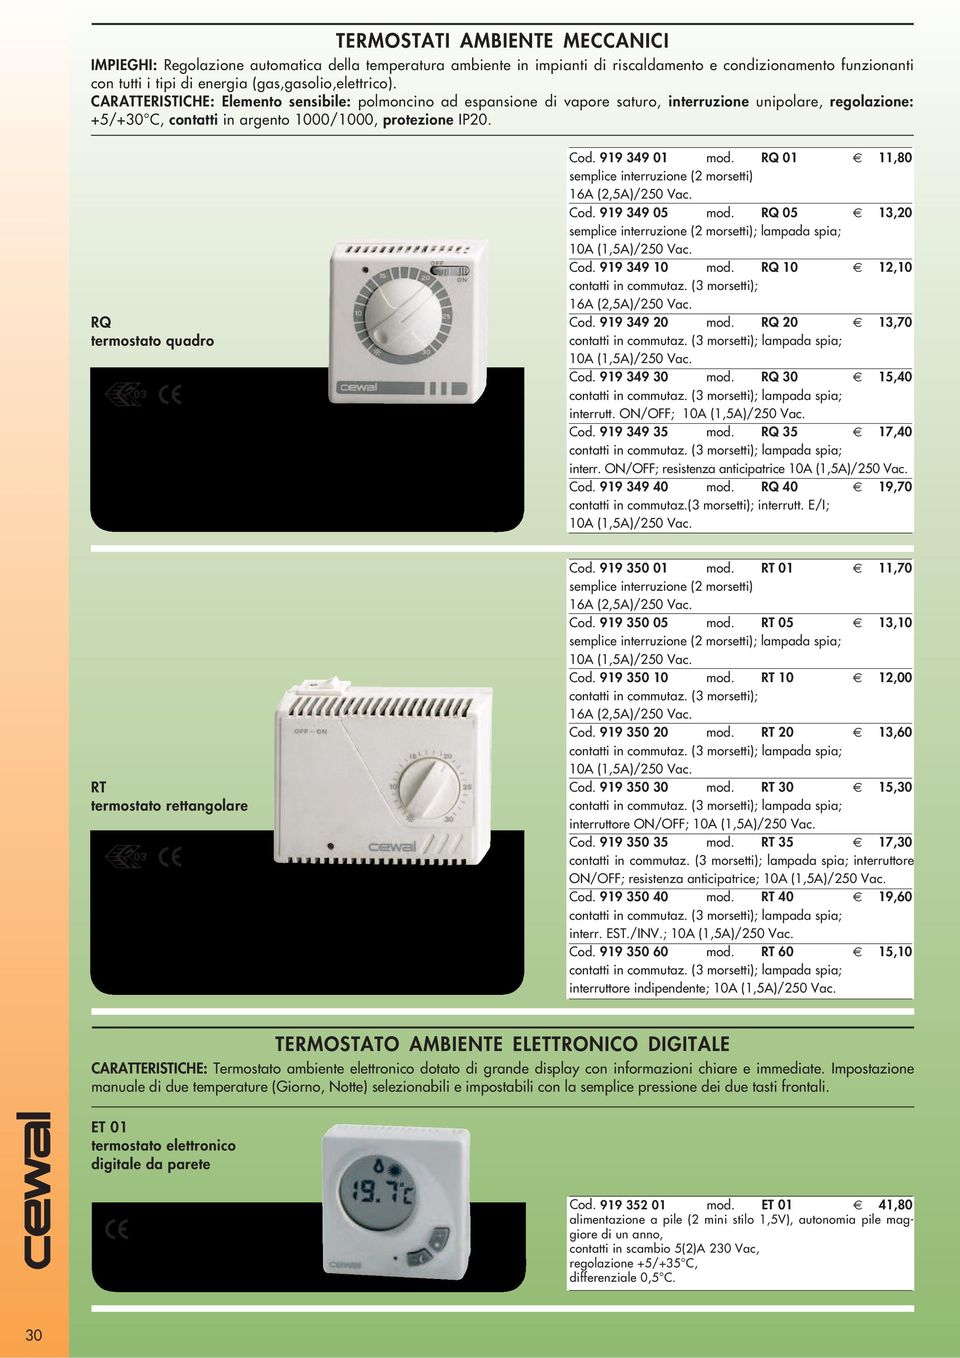 RQ termostato quadro Cod. 919 349 01 mod. RQ 01 11,80 semplice interruzione (2 morsetti) 16A (2,5A)/250 Vac. Cod. 919 349 05 mod.